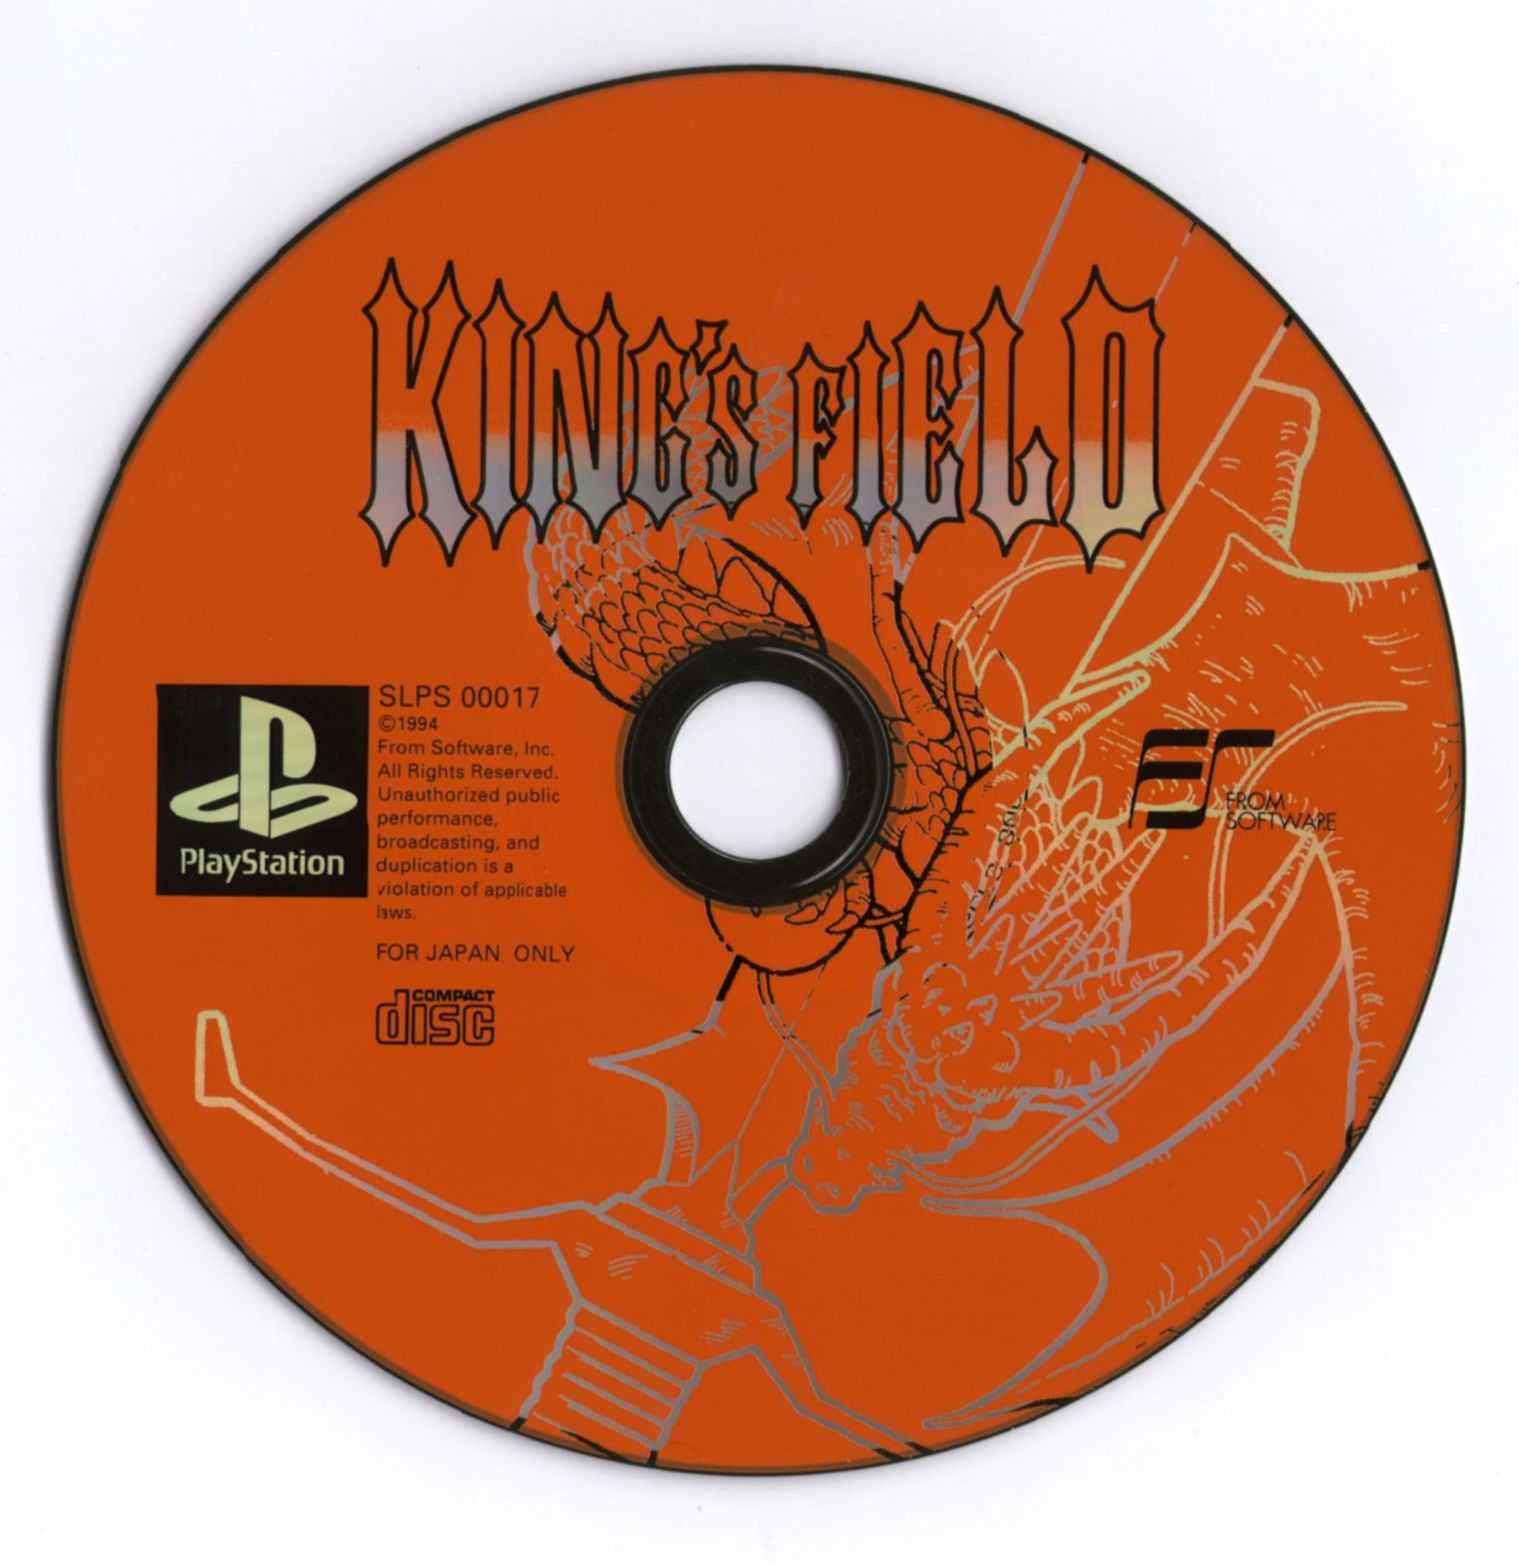 download kings field 3